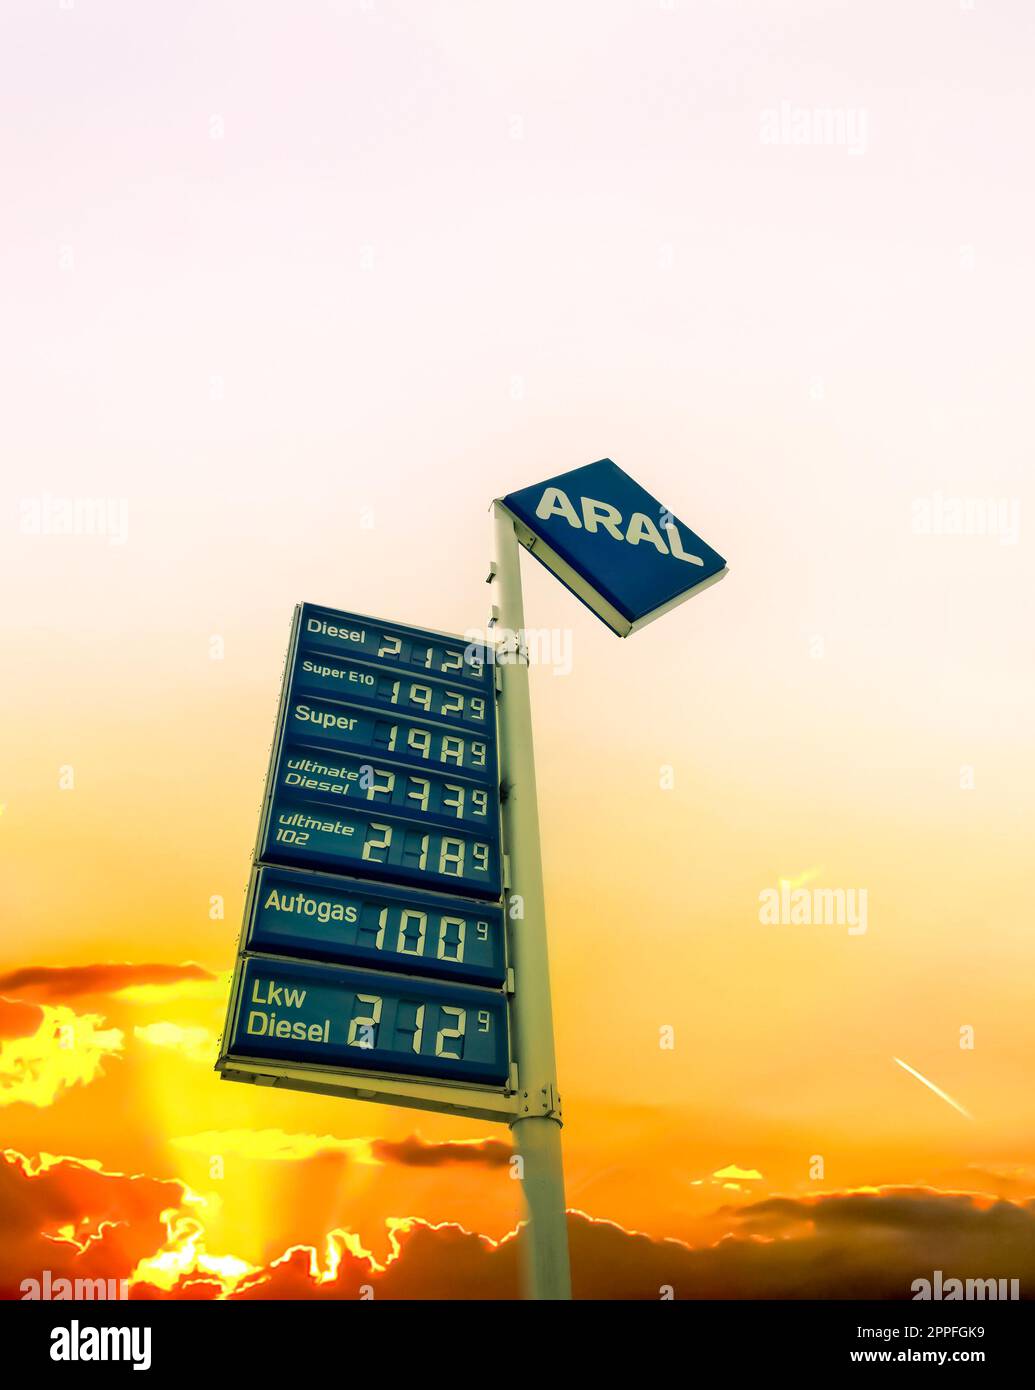 Kiel, Allemagne - 01.juillet 2022 : logo et prix des carburants d'ARAL en Allemagne au coucher du soleil. Aral est une marque de carburants automobiles et de stations-service. Banque D'Images